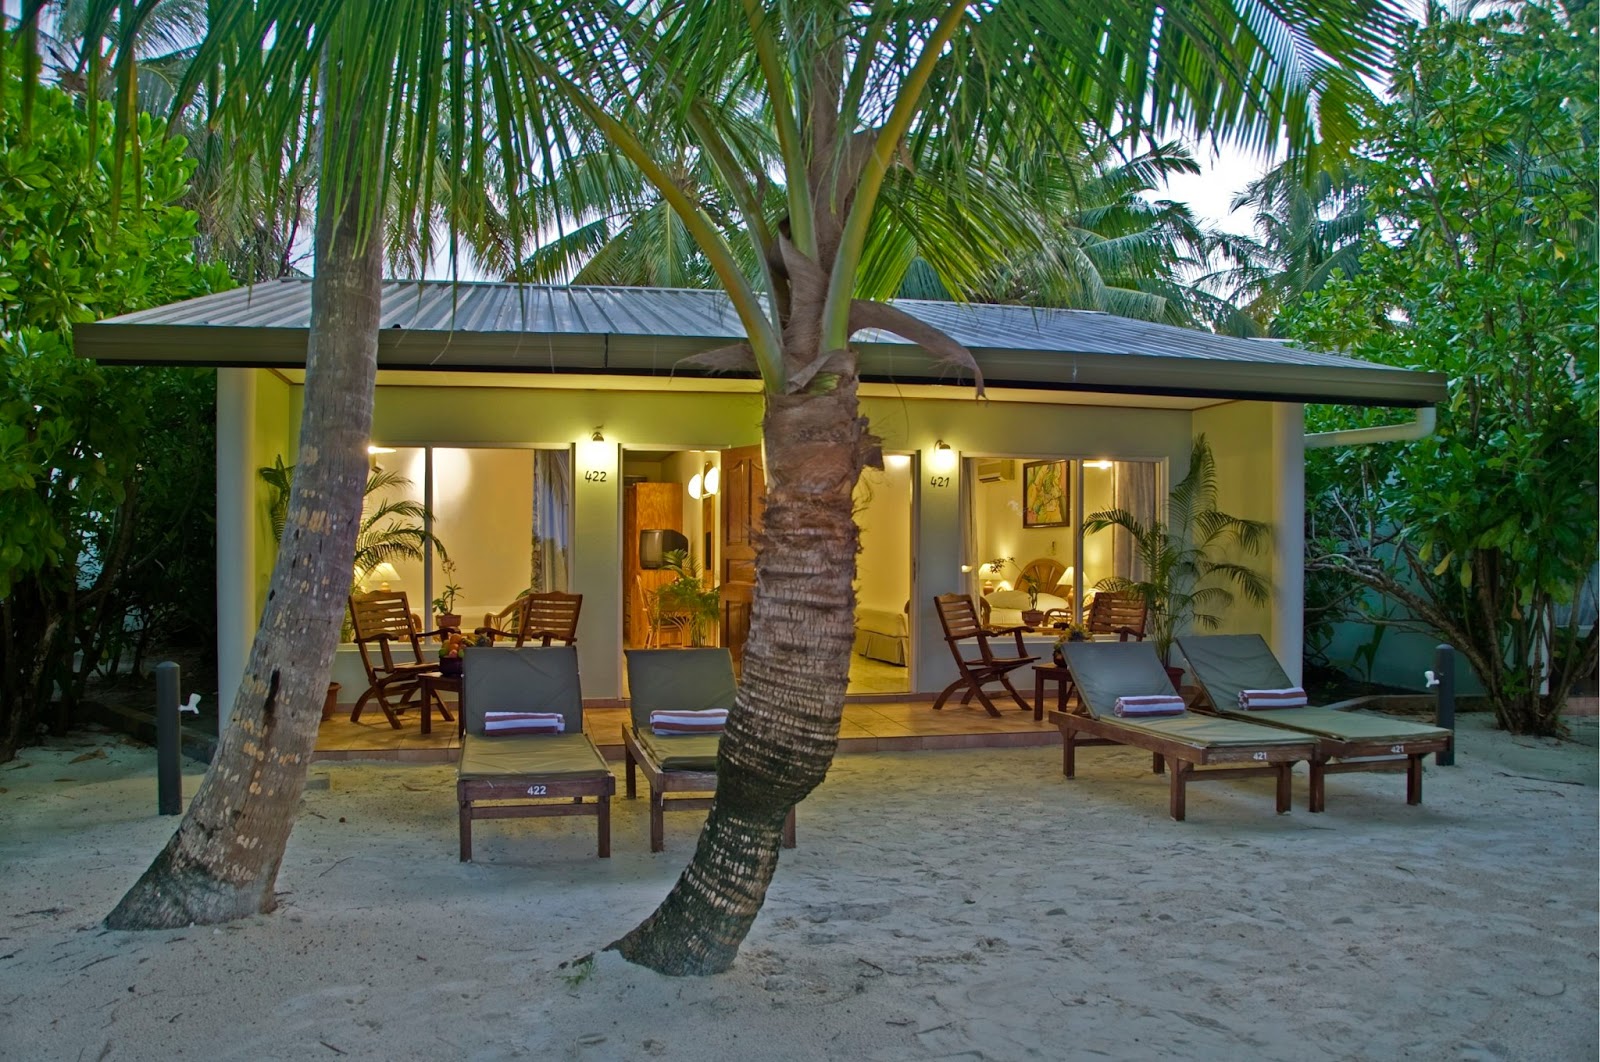 Island resort spa мальдивы. Отель Sun Island Resort & Spa. Мальдивы отель Sun Island. Мальдивы Сан Исланд Резорт 5. Sun Island Resort & Spa 4*.